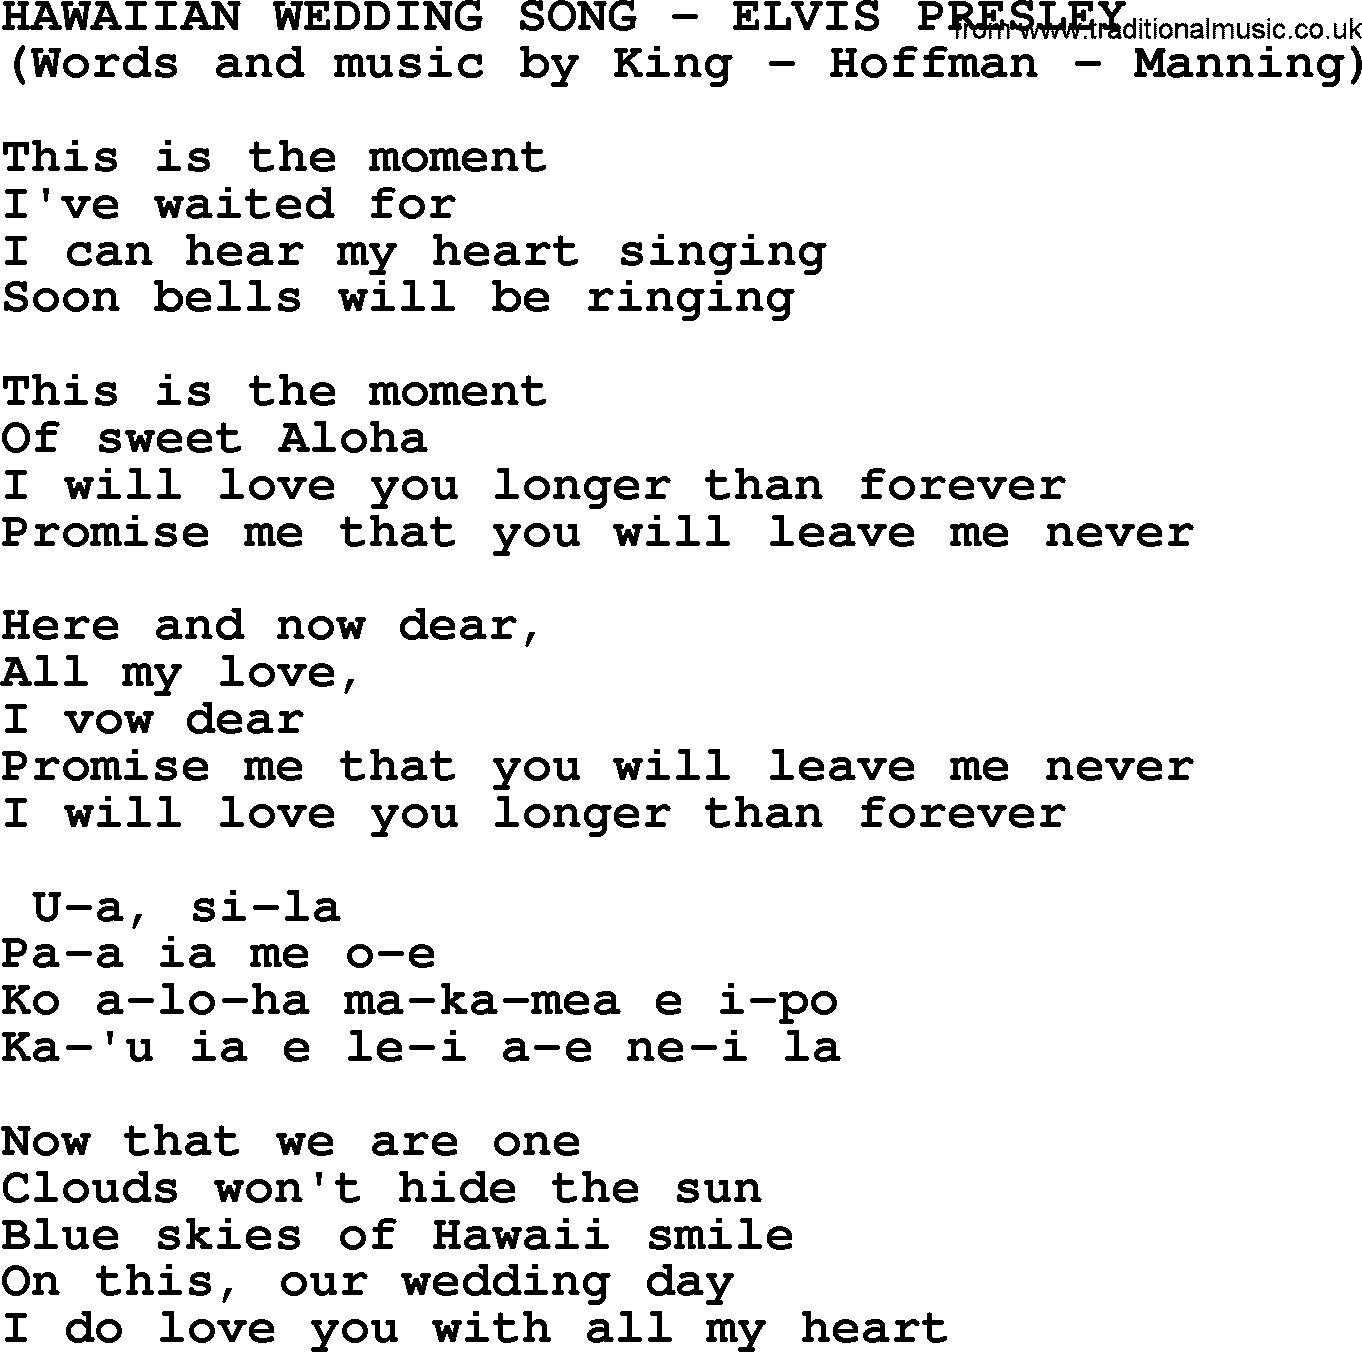 Elvis Presley song: Hawaiian Wedding Song lyrics